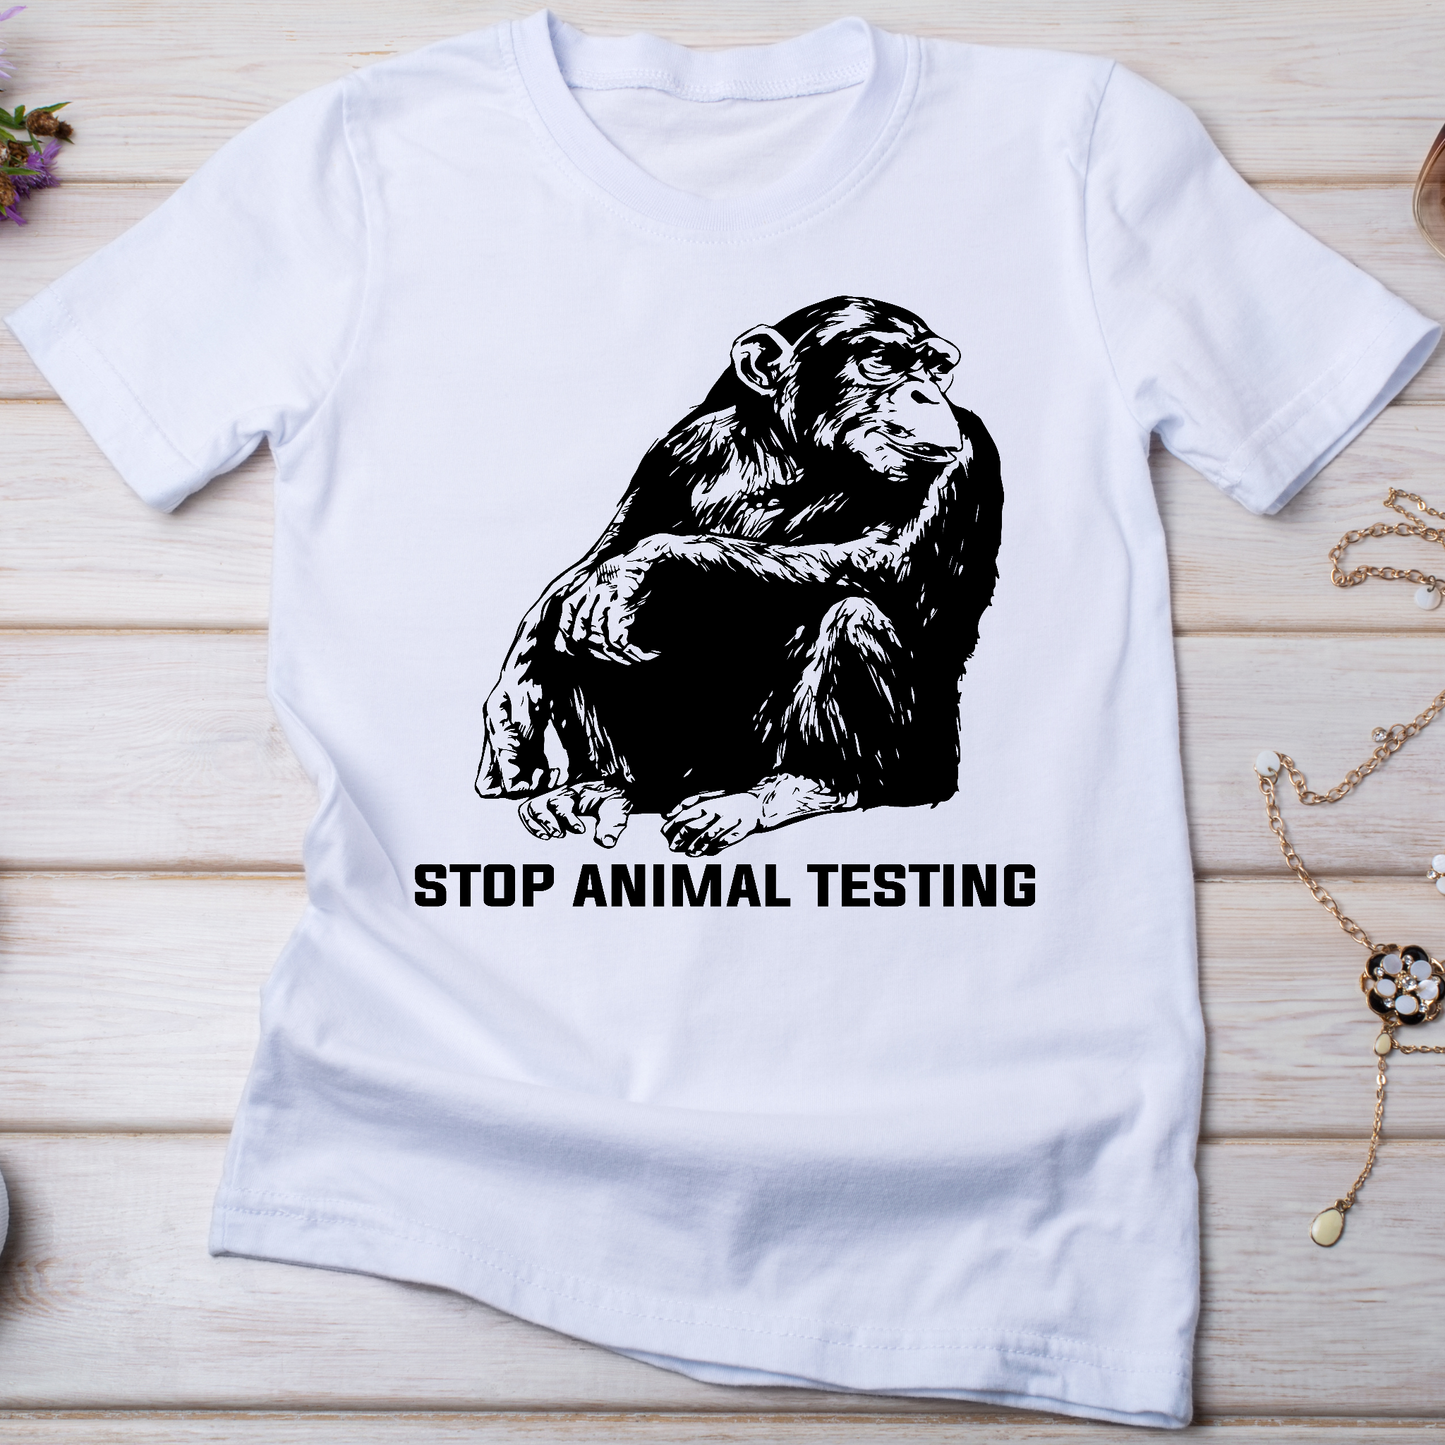 Stop animal testing monkey Women's vegan t-shirt - Premium t-shirt from Lees Krazy Teez - Just $19.95! Shop now at Lees Krazy Teez